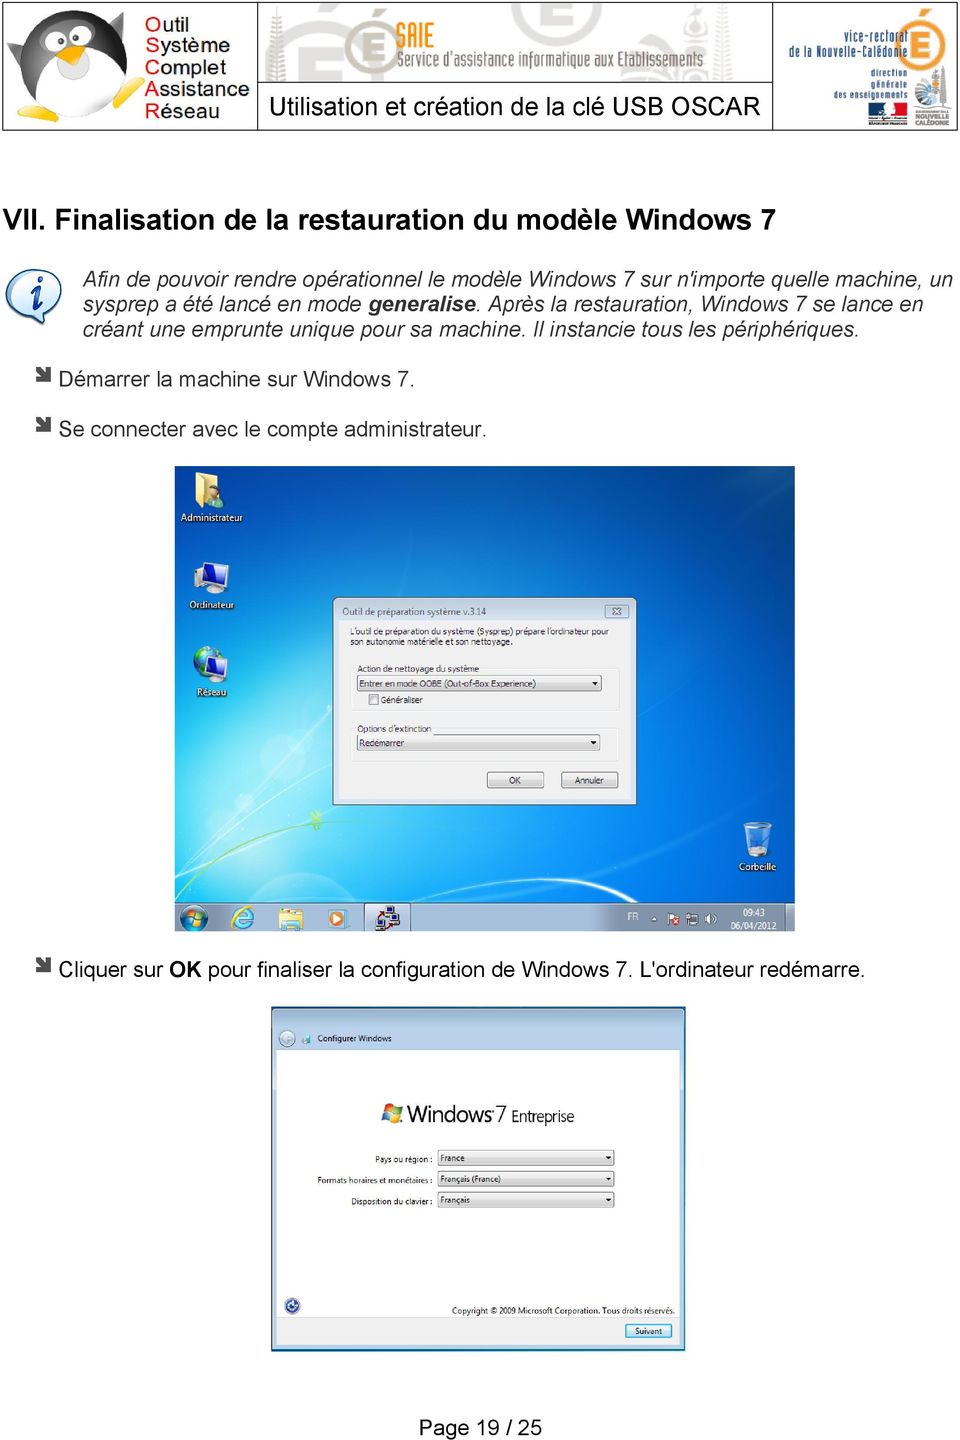 Après la restauration, Windows 7 se lance en créant une emprunte unique pour sa machine.